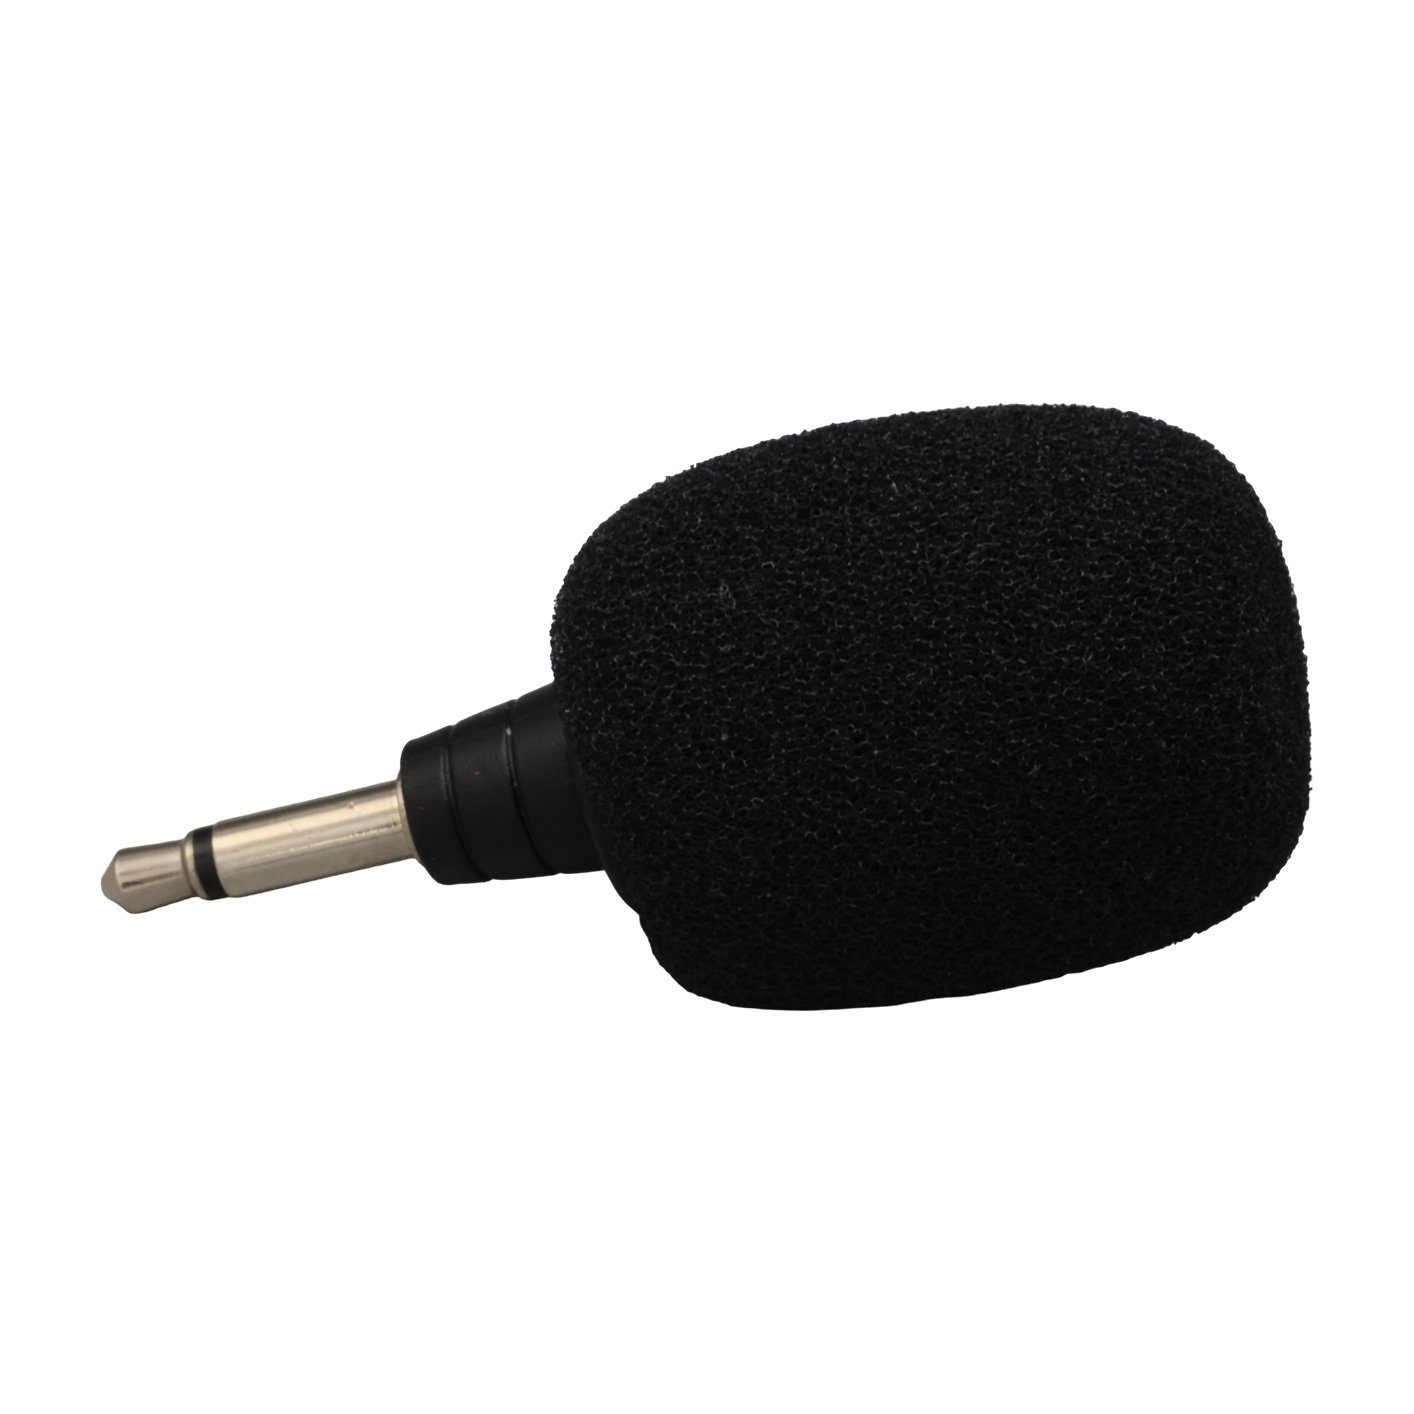 Tur Rehber Sistemi Kısa Mikrofon (4172)